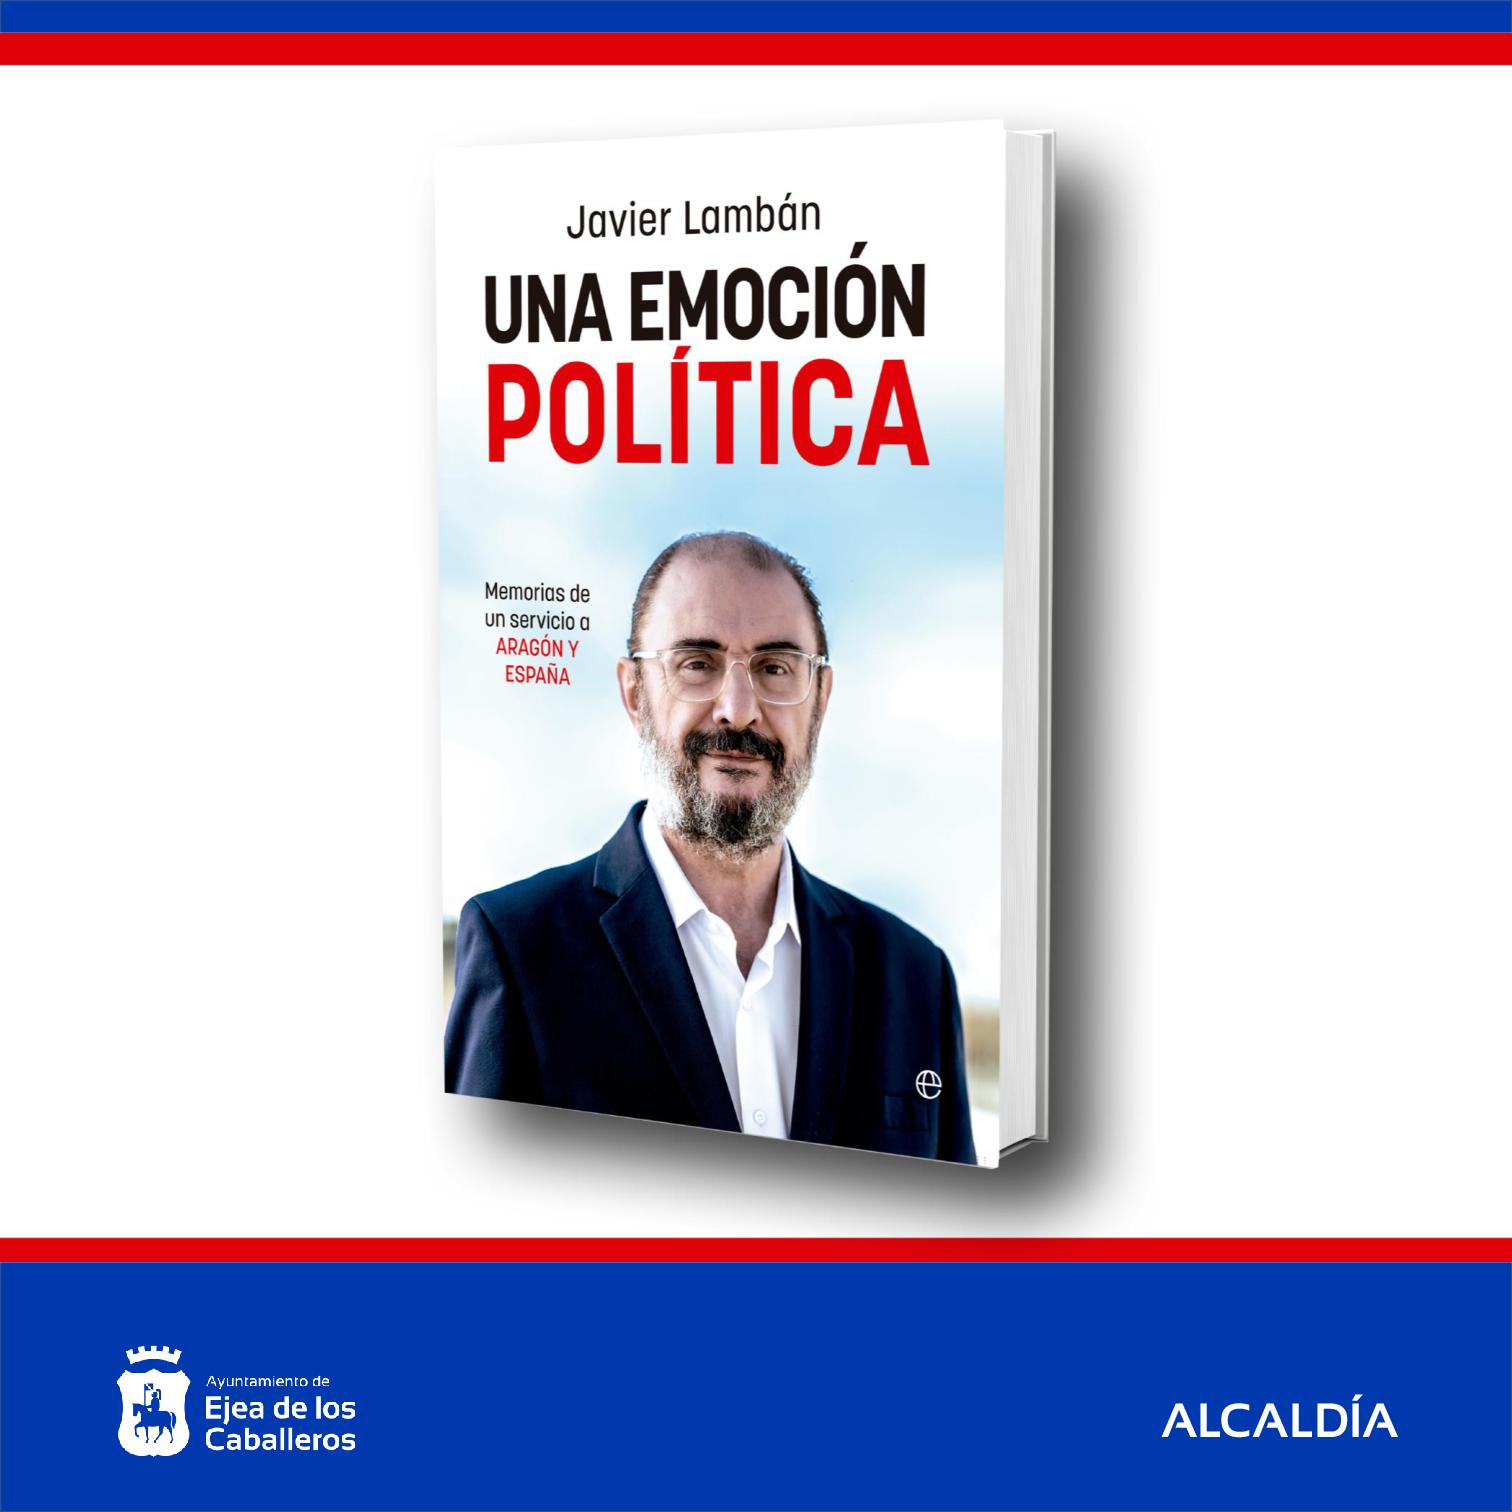 En este momento estás viendo Presentación del libro “Una emoción política” de Javier Lambán Montañés en Ejea